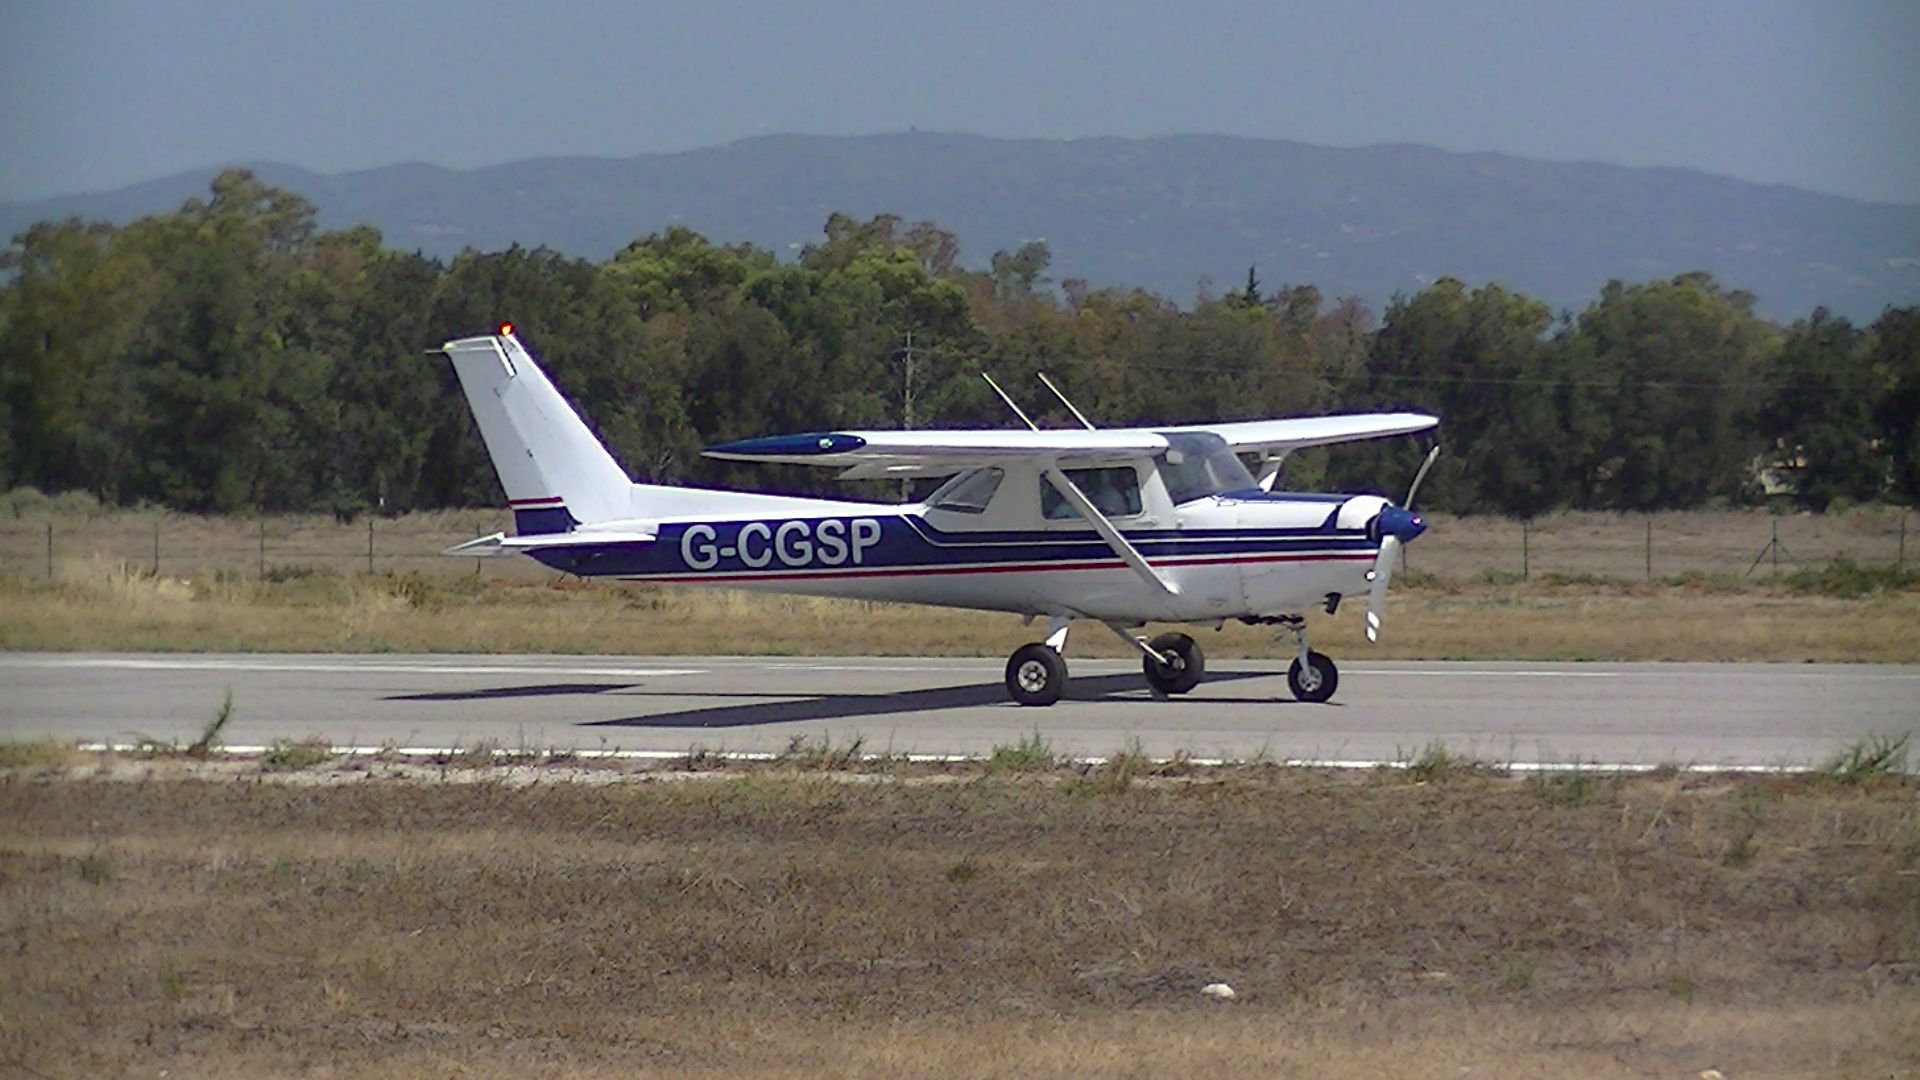 Cessna 152 G CGSP At Portimão Airport 17 8